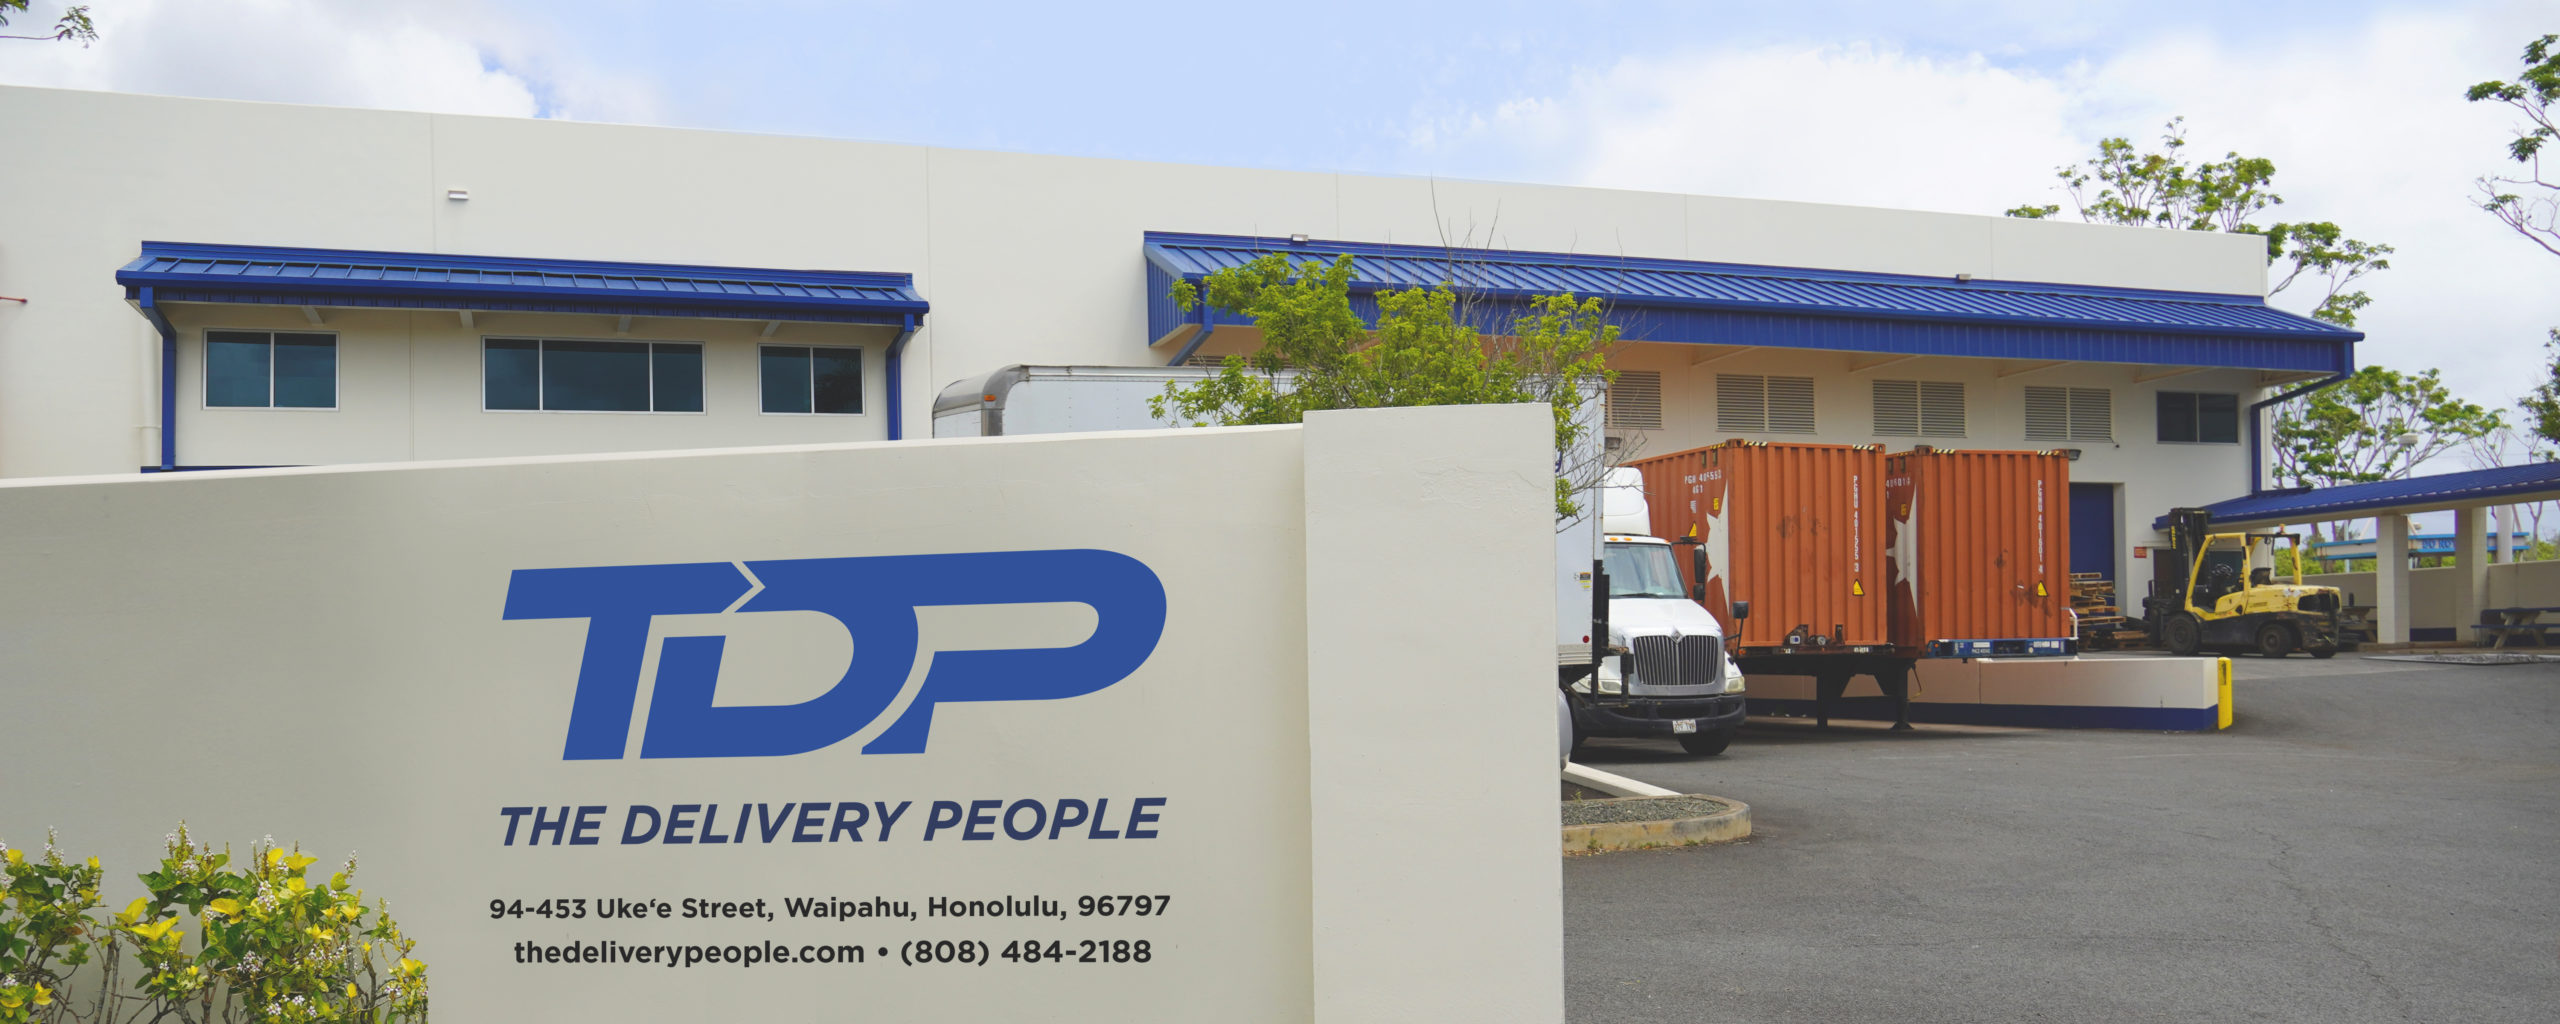 TDP Headquarters